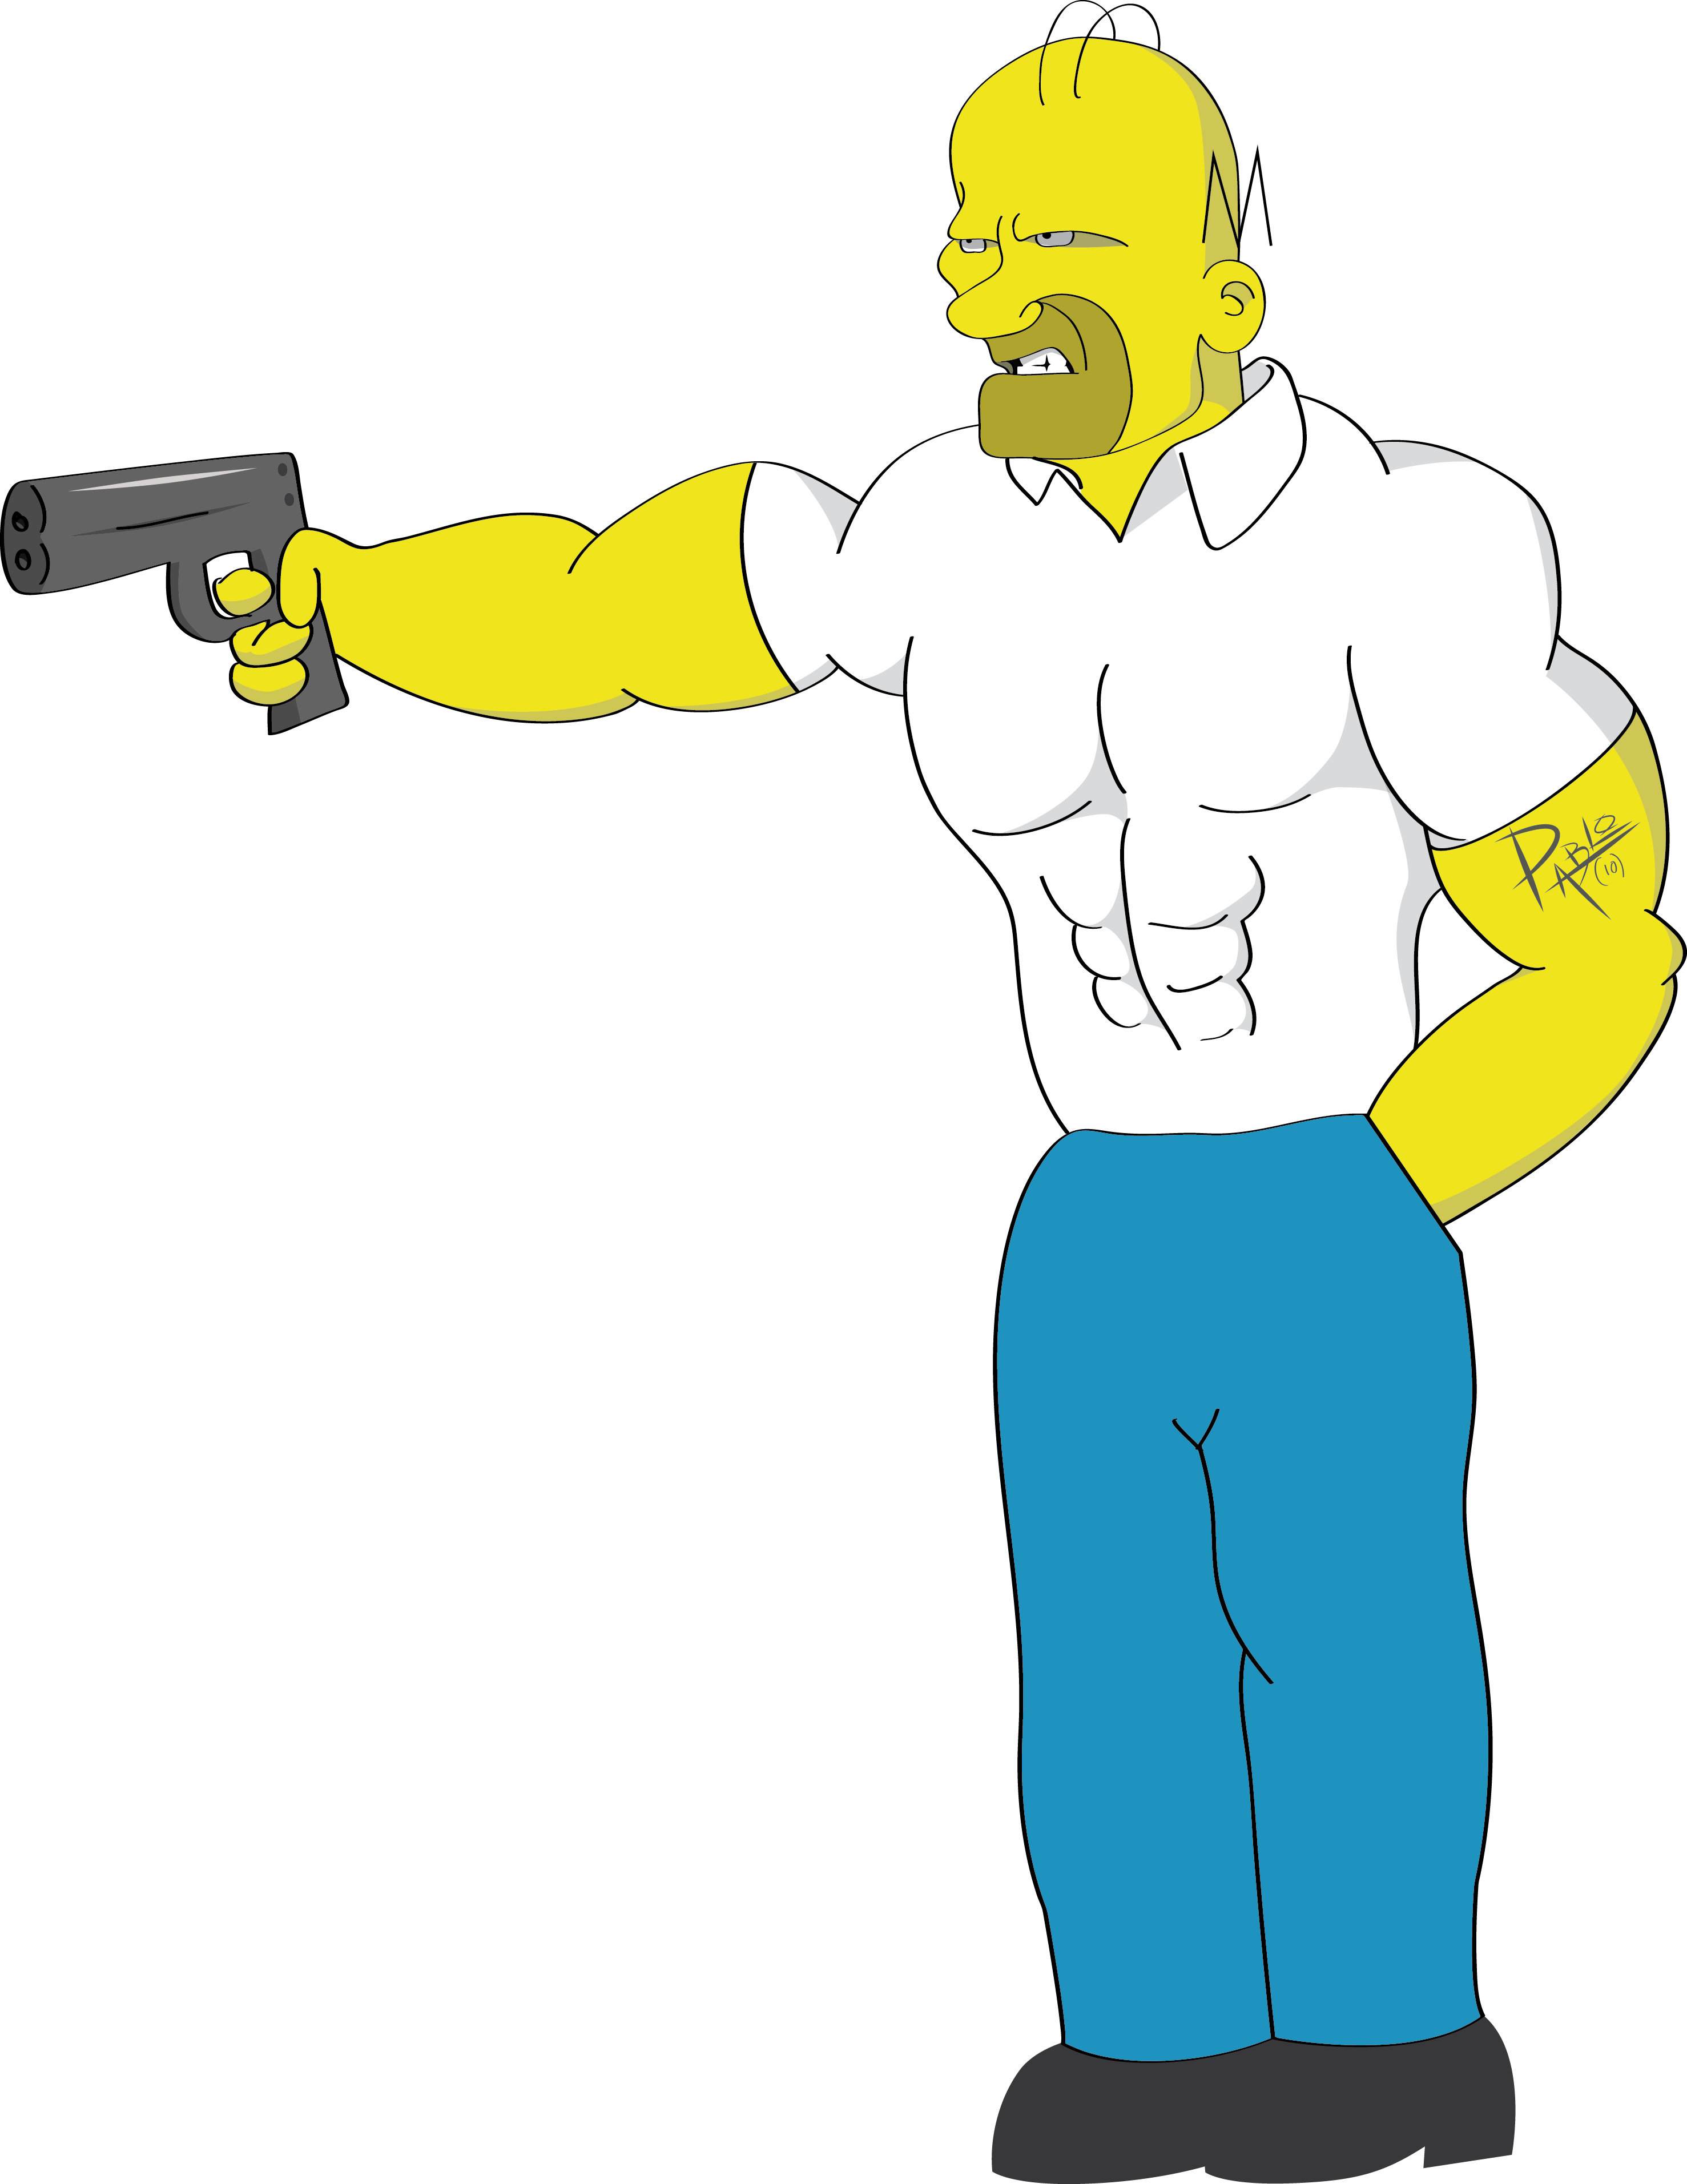 Download Y - Dibujos De Homero Simpson PNG Image with No Background -  